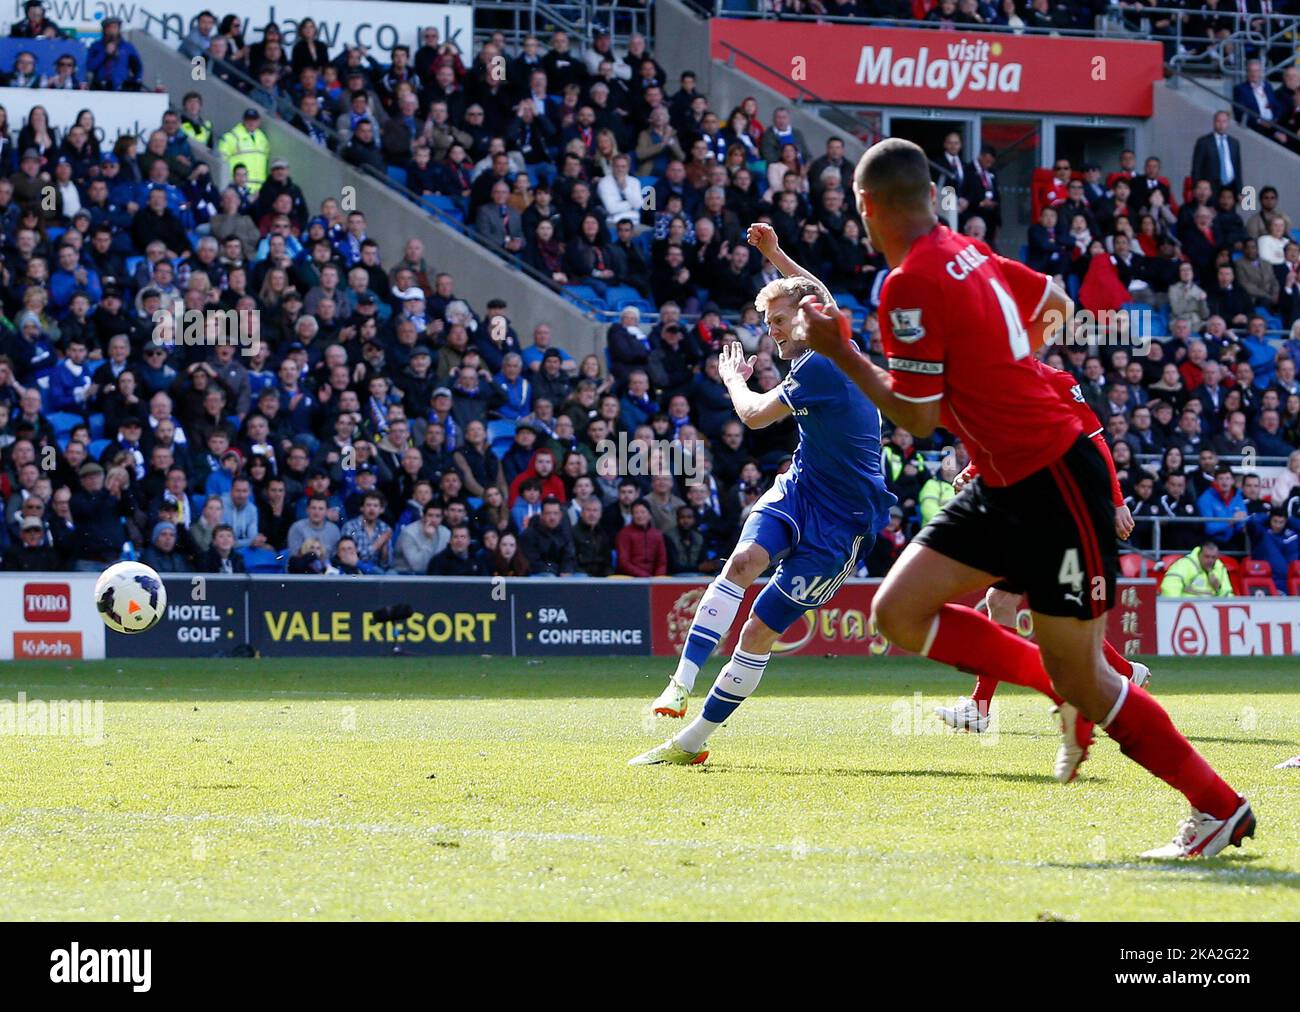 11th mai 2014 - Barclays Premier League - Cardiff City / Chelsea - Andre Schurrle de Chelsea tire pour marquer son égaliseur (1-1) - photo: Paul Roberts/Pathos. Banque D'Images